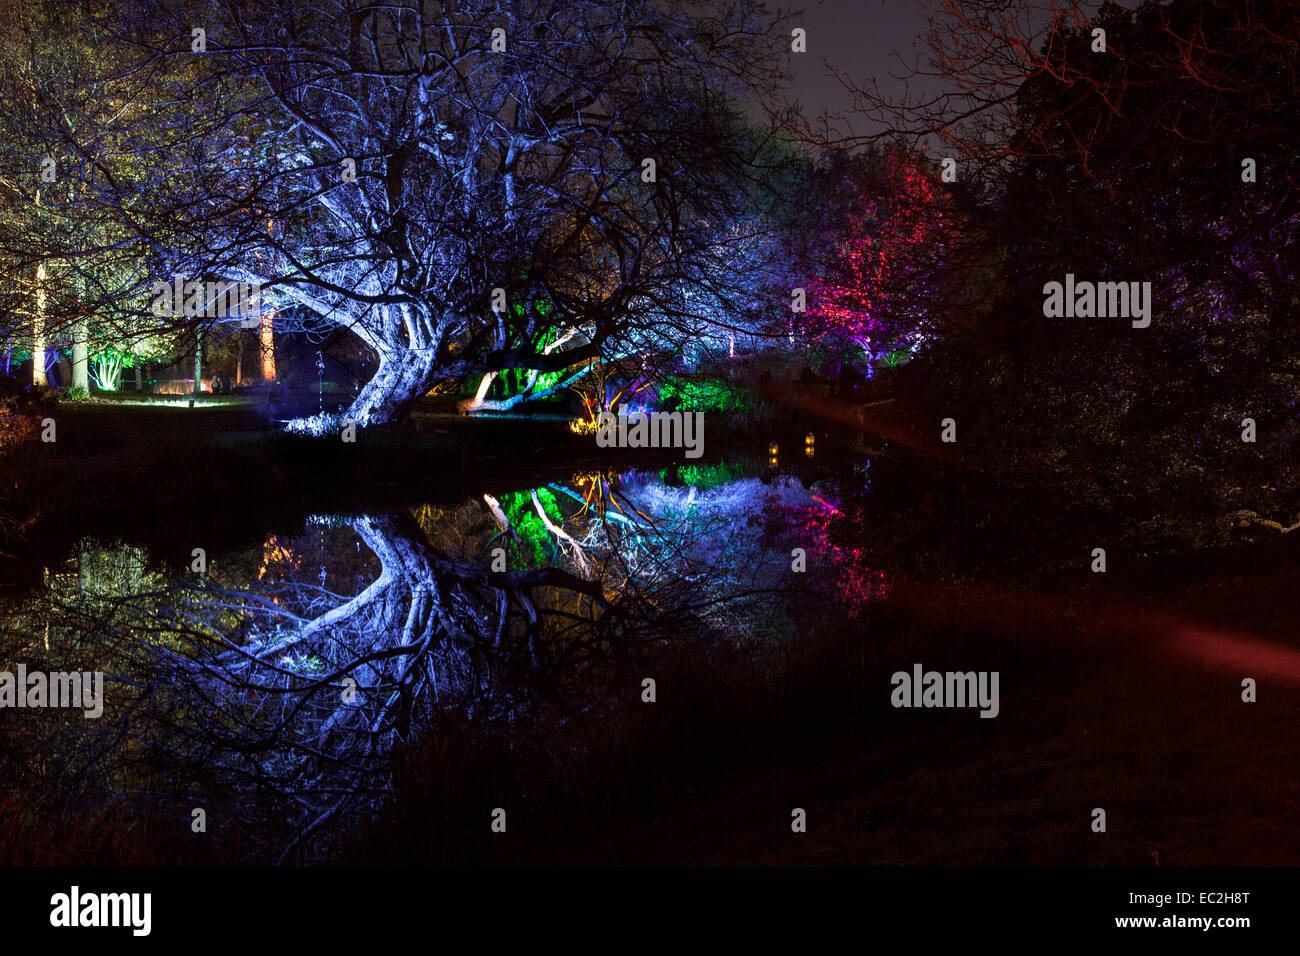 Enchanted Woodland, Syon Park, London - Décembre 2014 Banque D'Images